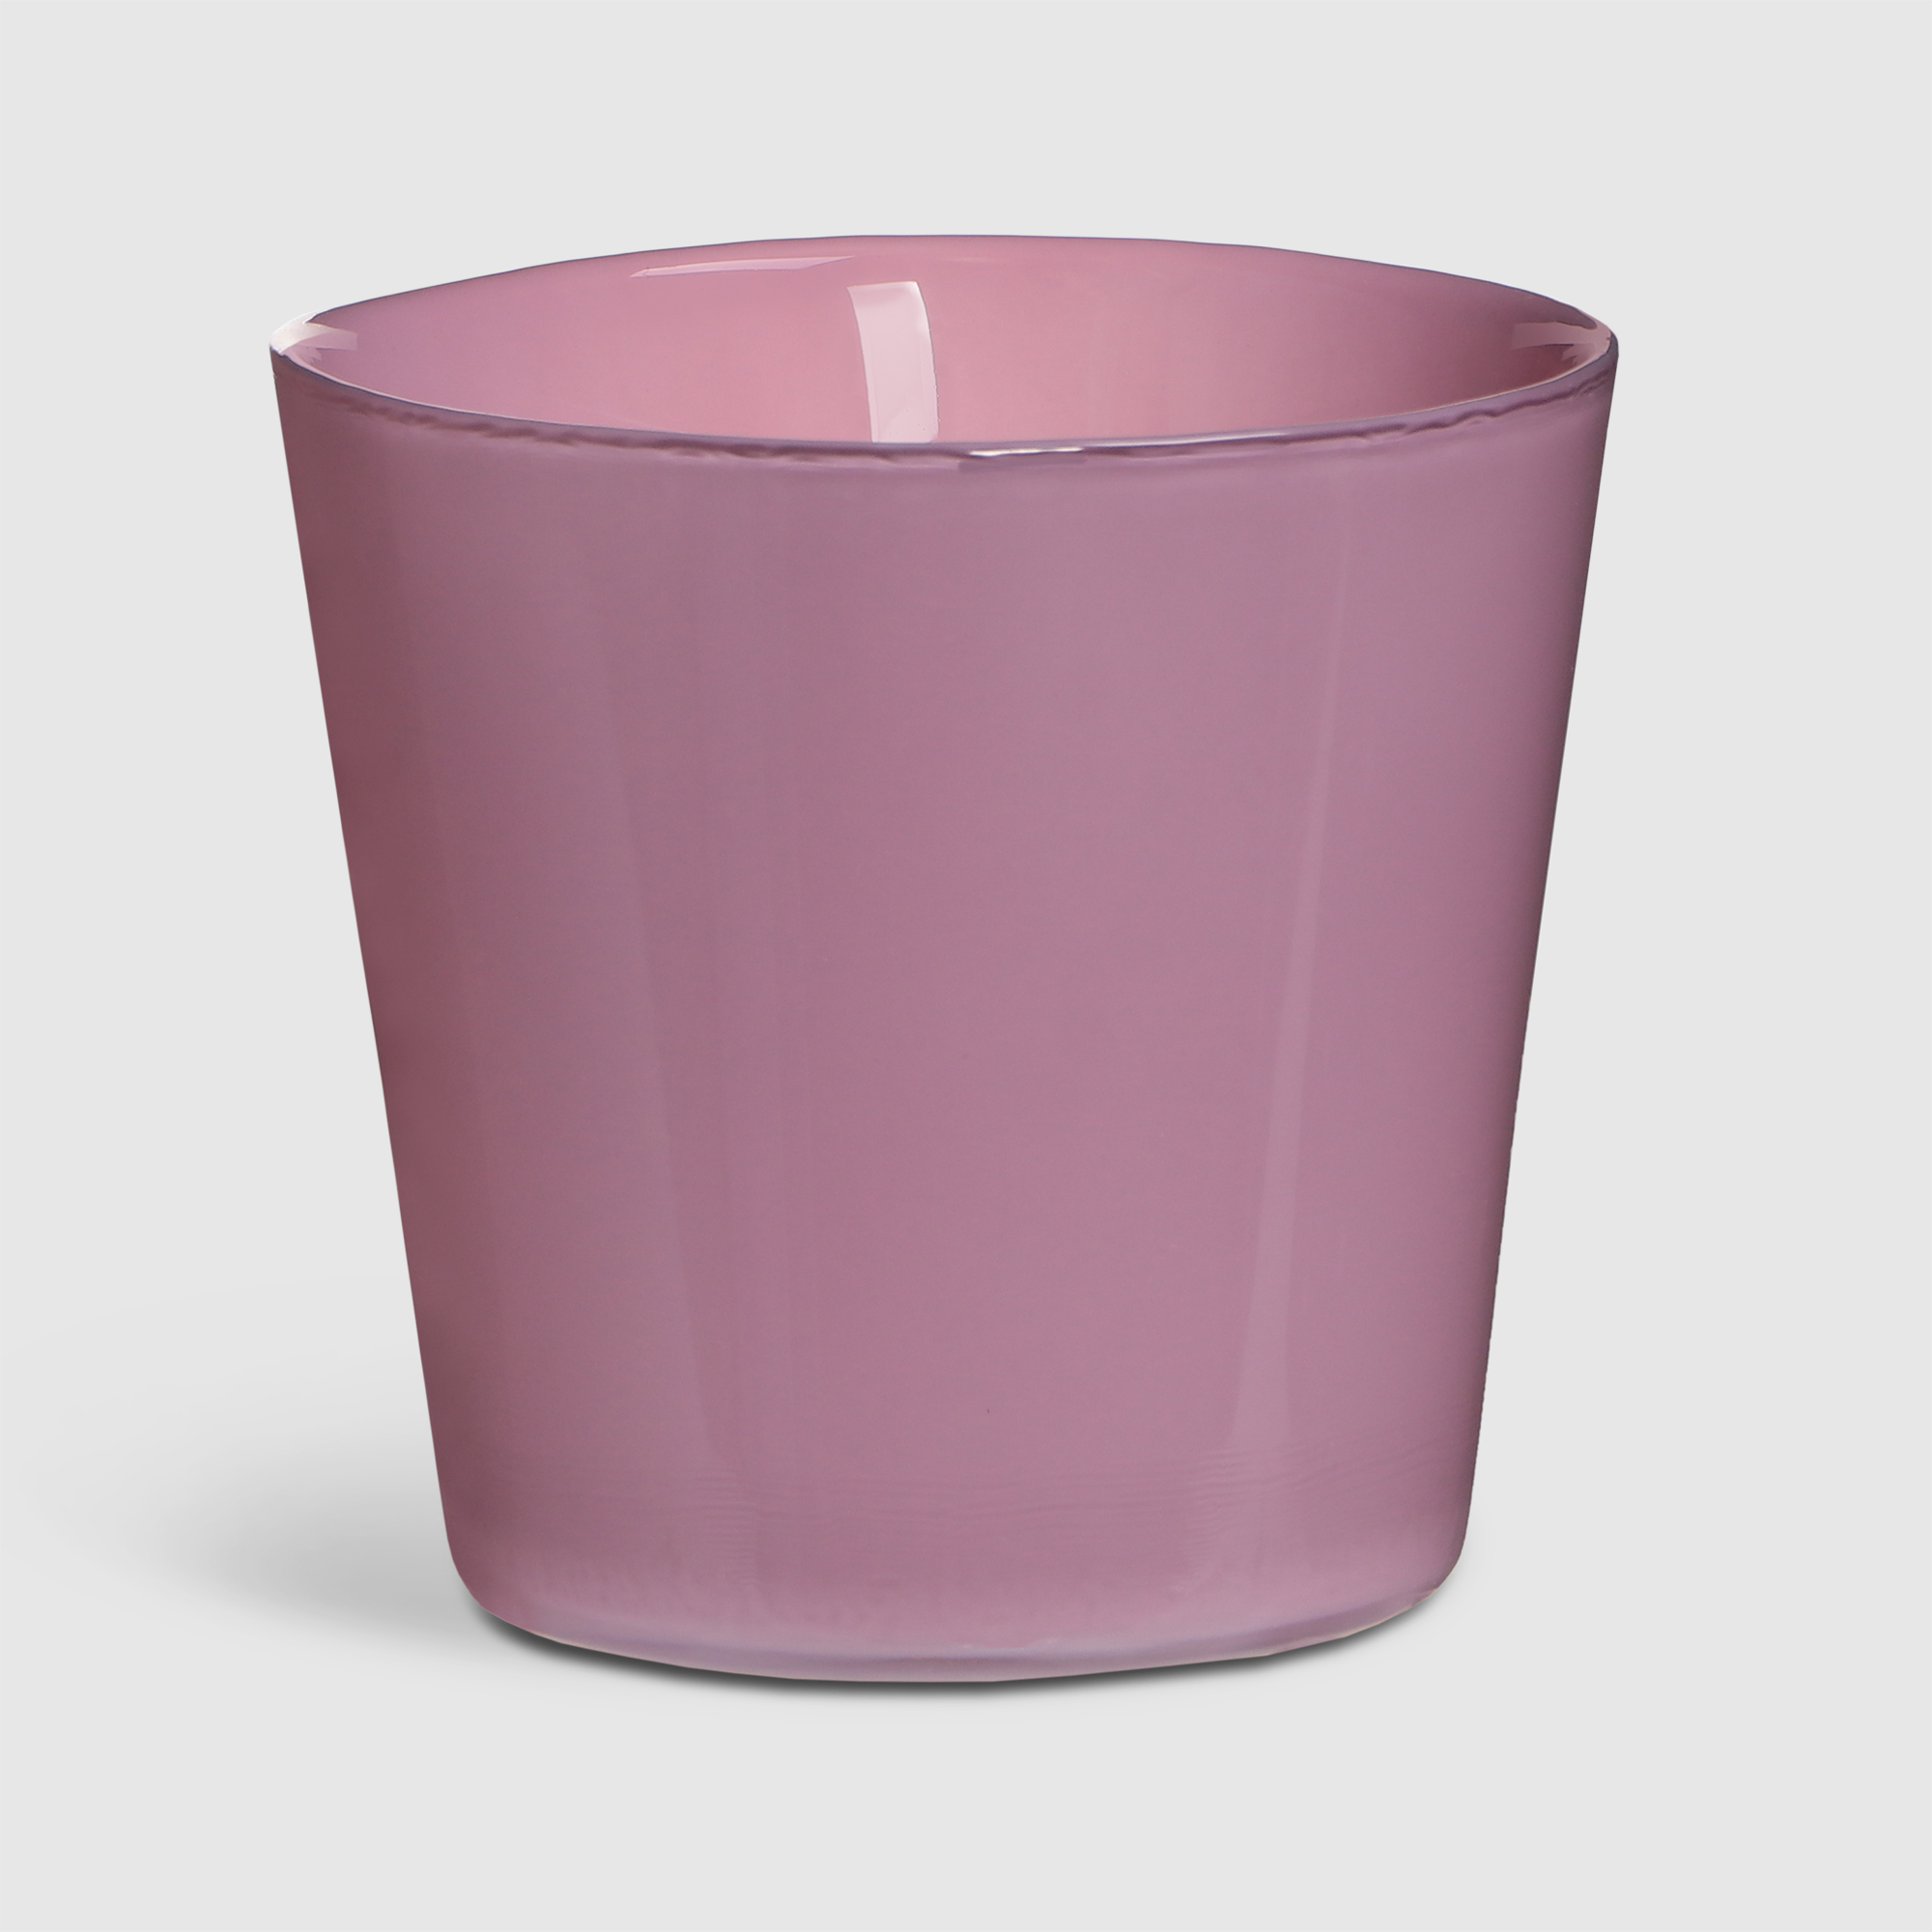 Ваза Hakbijl glass Conny 13,5х12,5 см розовая